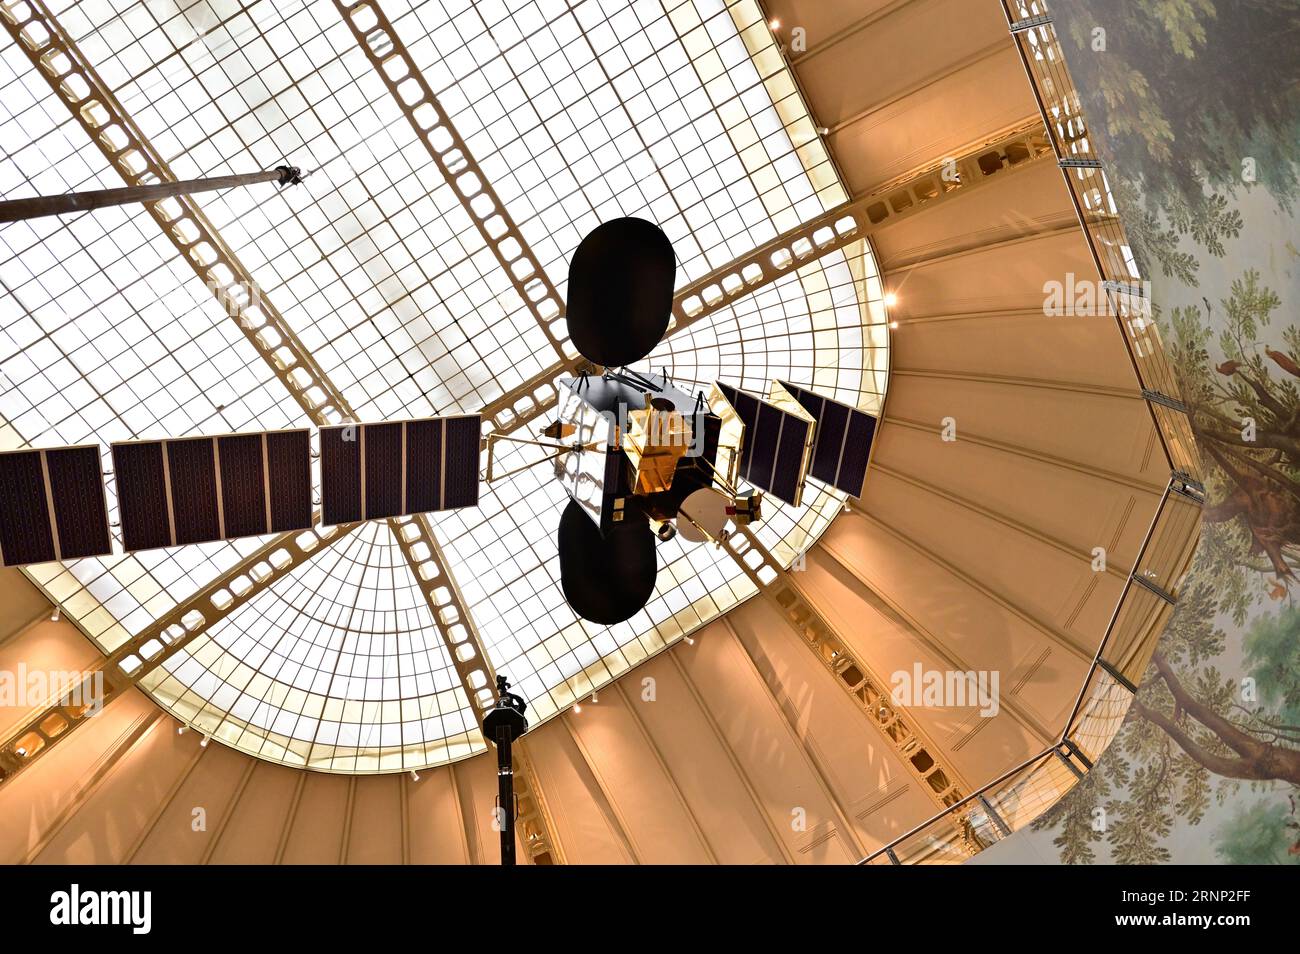 Vienne, Autriche. Sonde spatiale au Musée technique de Vienne Banque D'Images